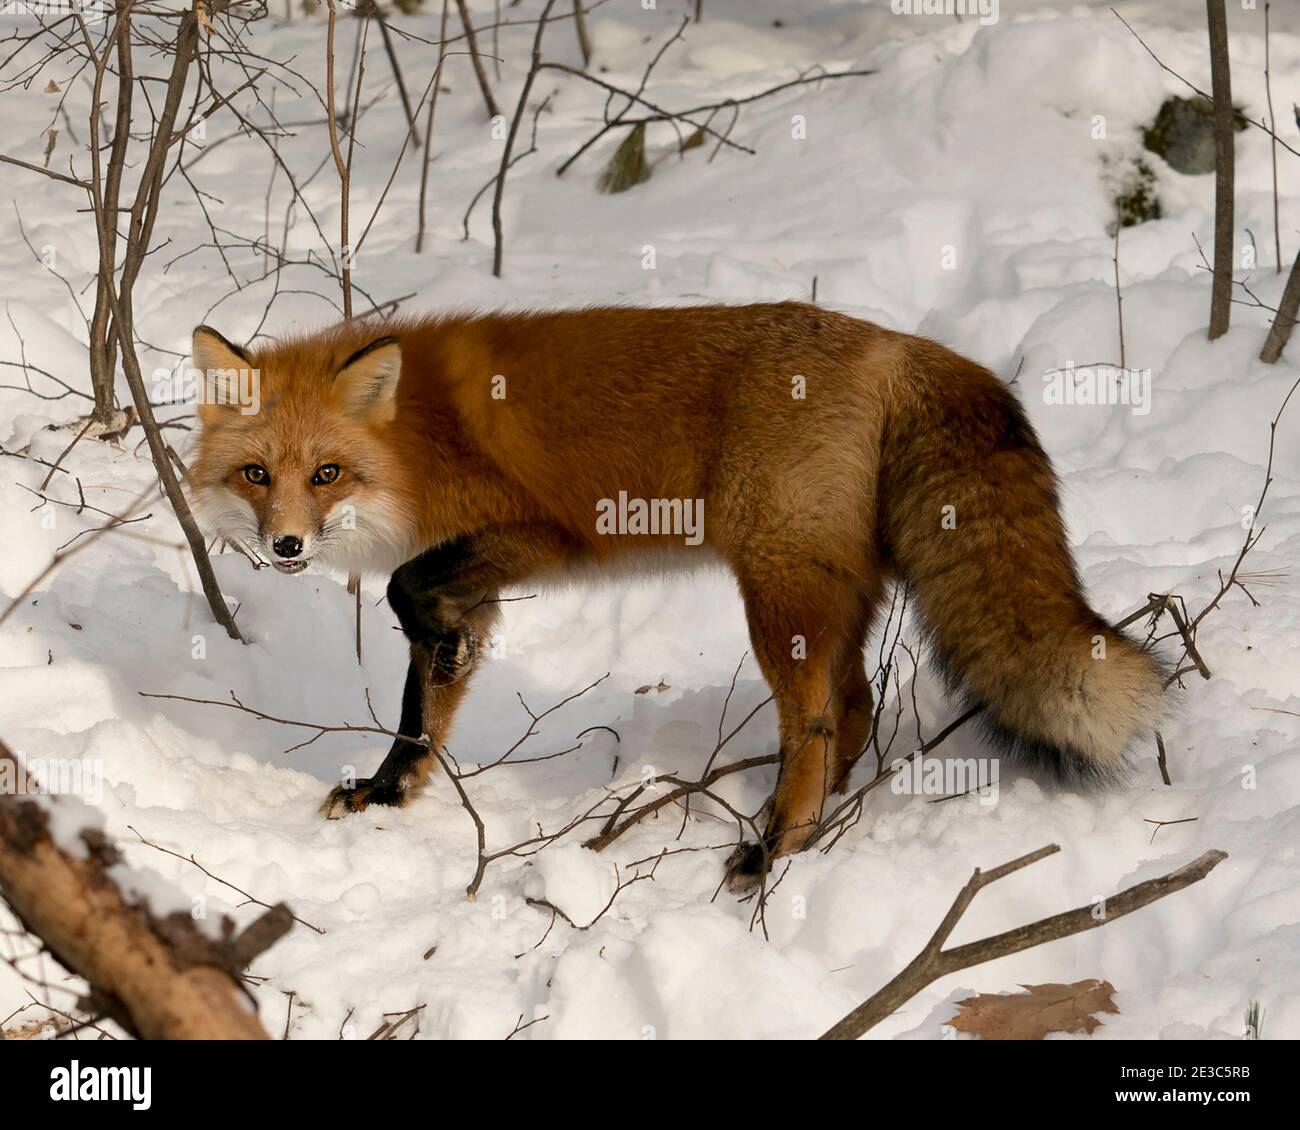 Volpe rossa guardando la macchina fotografica nella stagione invernale nel suo habitat con neve e rami sfondo mostra folgorosa coda di volpe, pelliccia. Immagine FOX. Immagine. Foto Stock